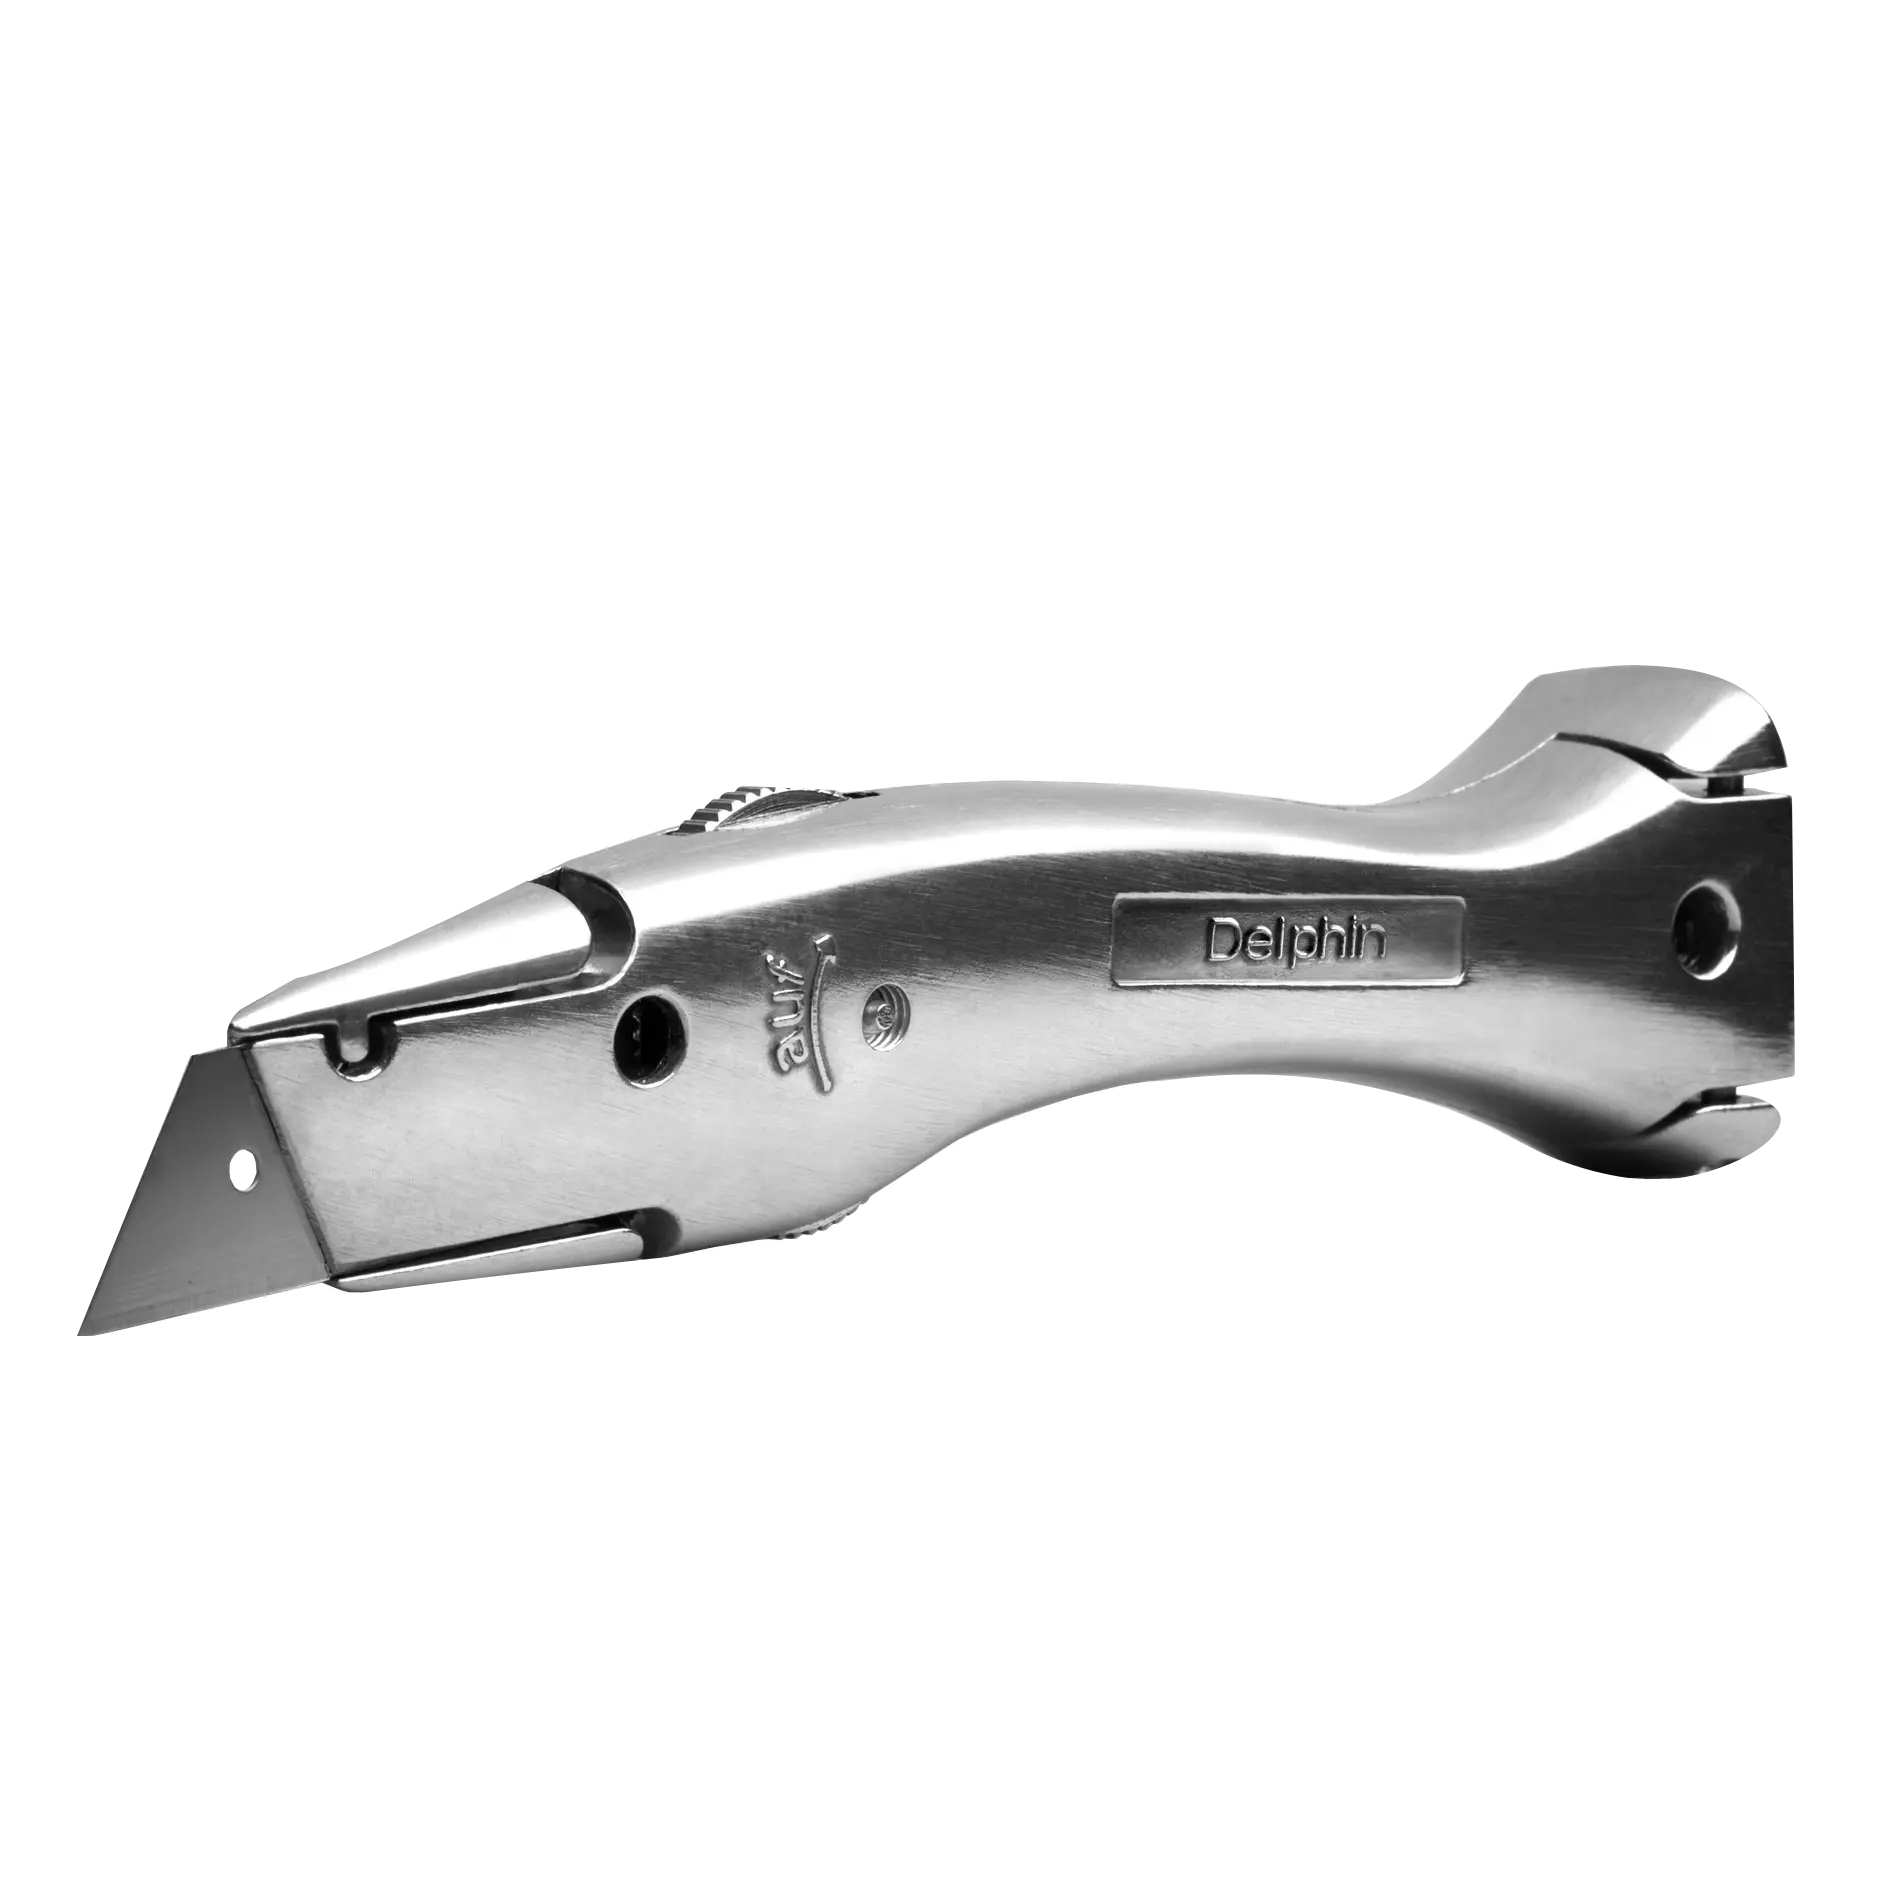 Delphin 03 Utility Knife